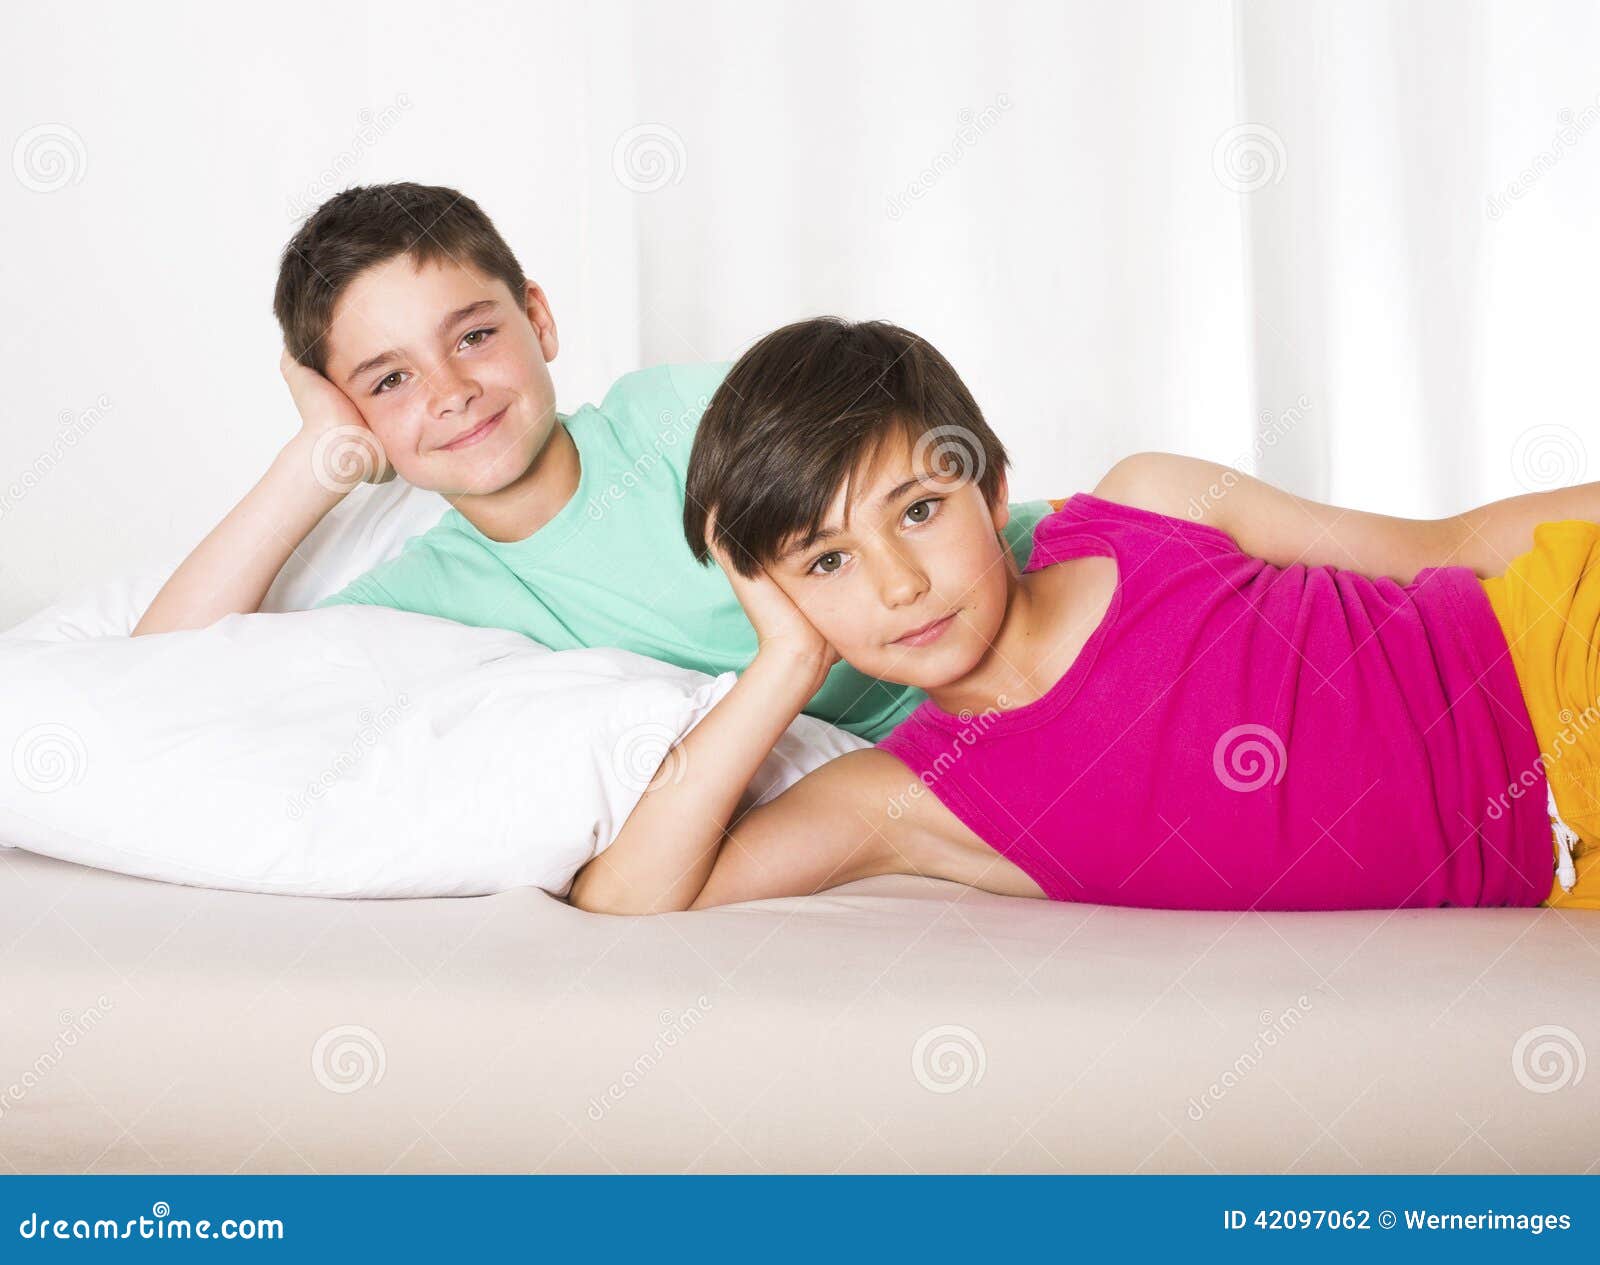 Young boys 2. Два мальчика в постели. Мальчик в постели. Юный мальчик в кровати. Мальчик с мальчиком в кровати.